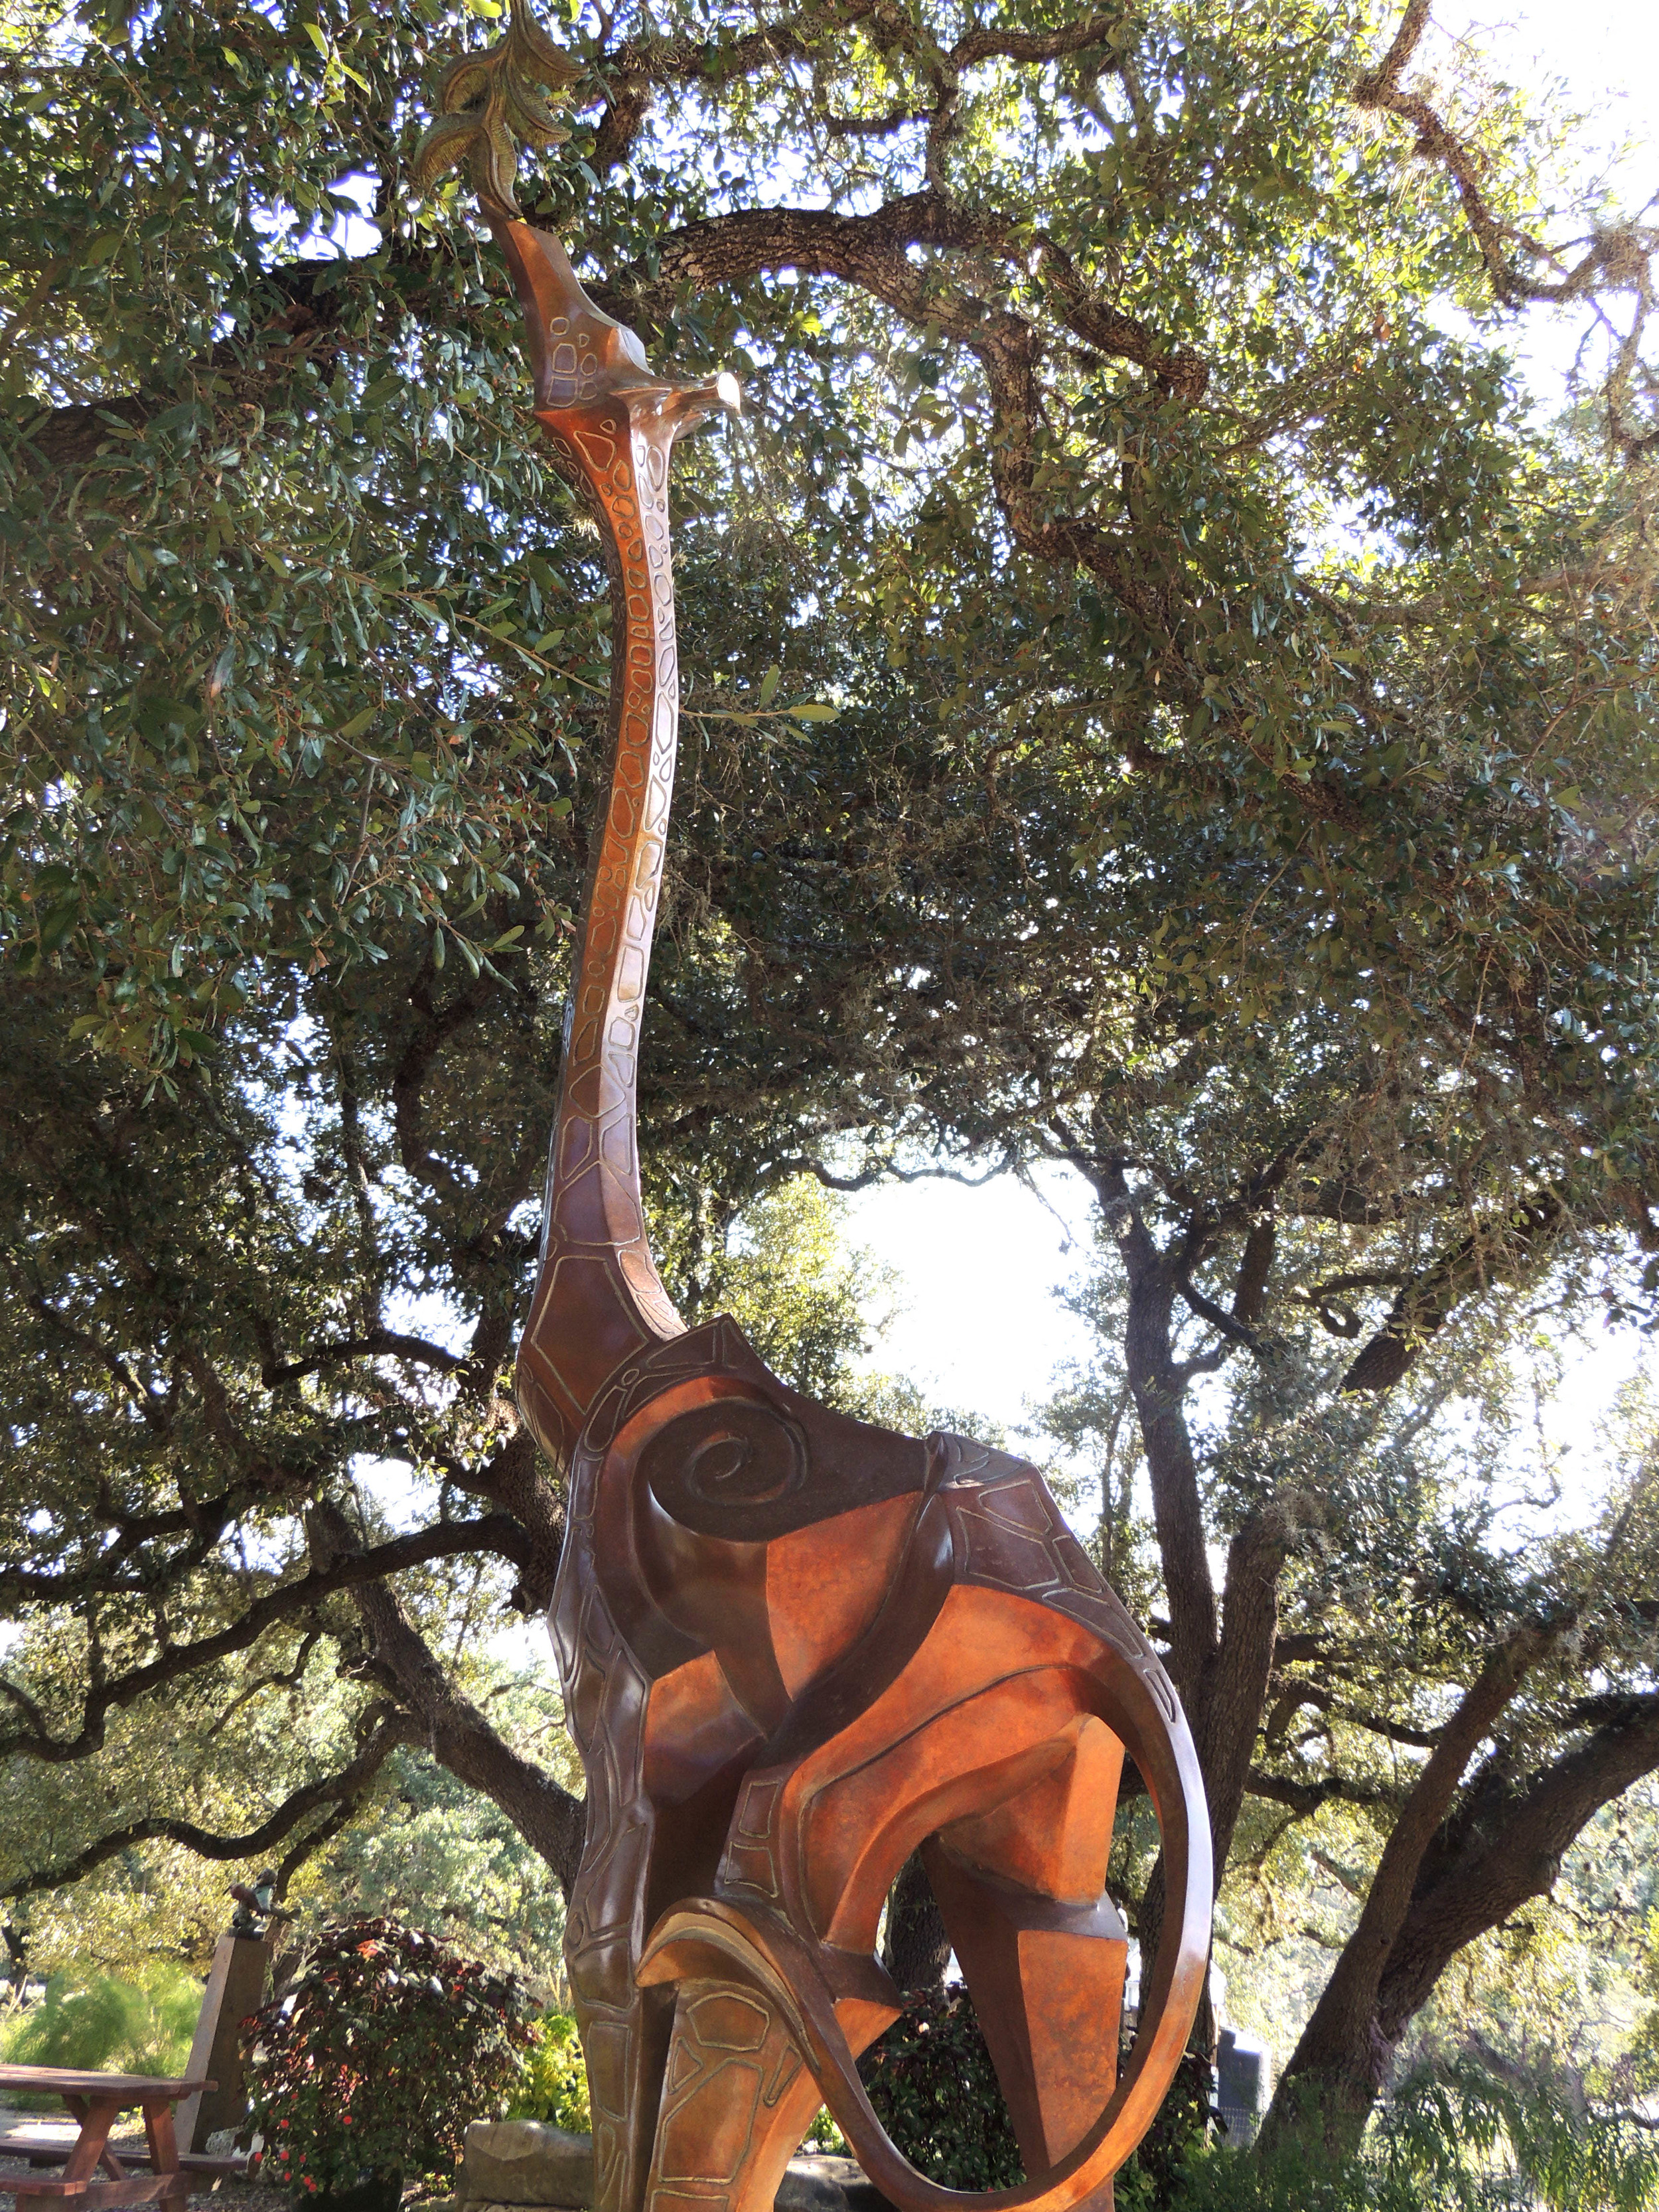  Giraffe Bronze Sculpture Monument by John Maisano&nbsp; 